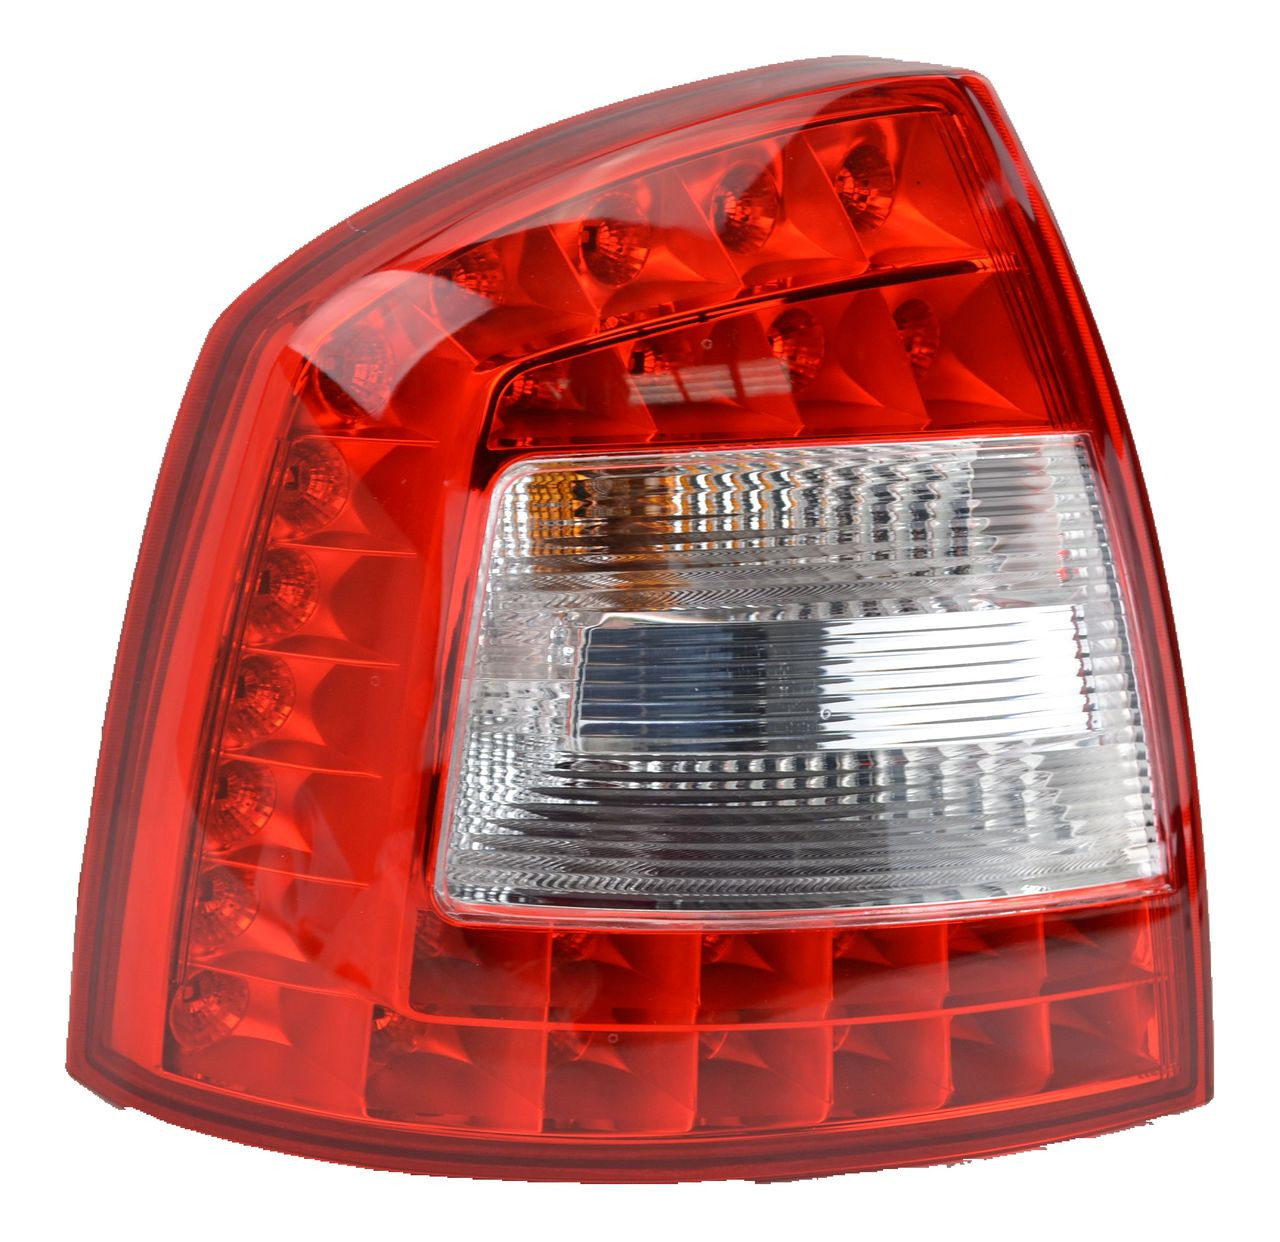 Tail light for Skoda Octavia 03/09-10/13 New Left LHS Rear Lamp LED 10 11 12